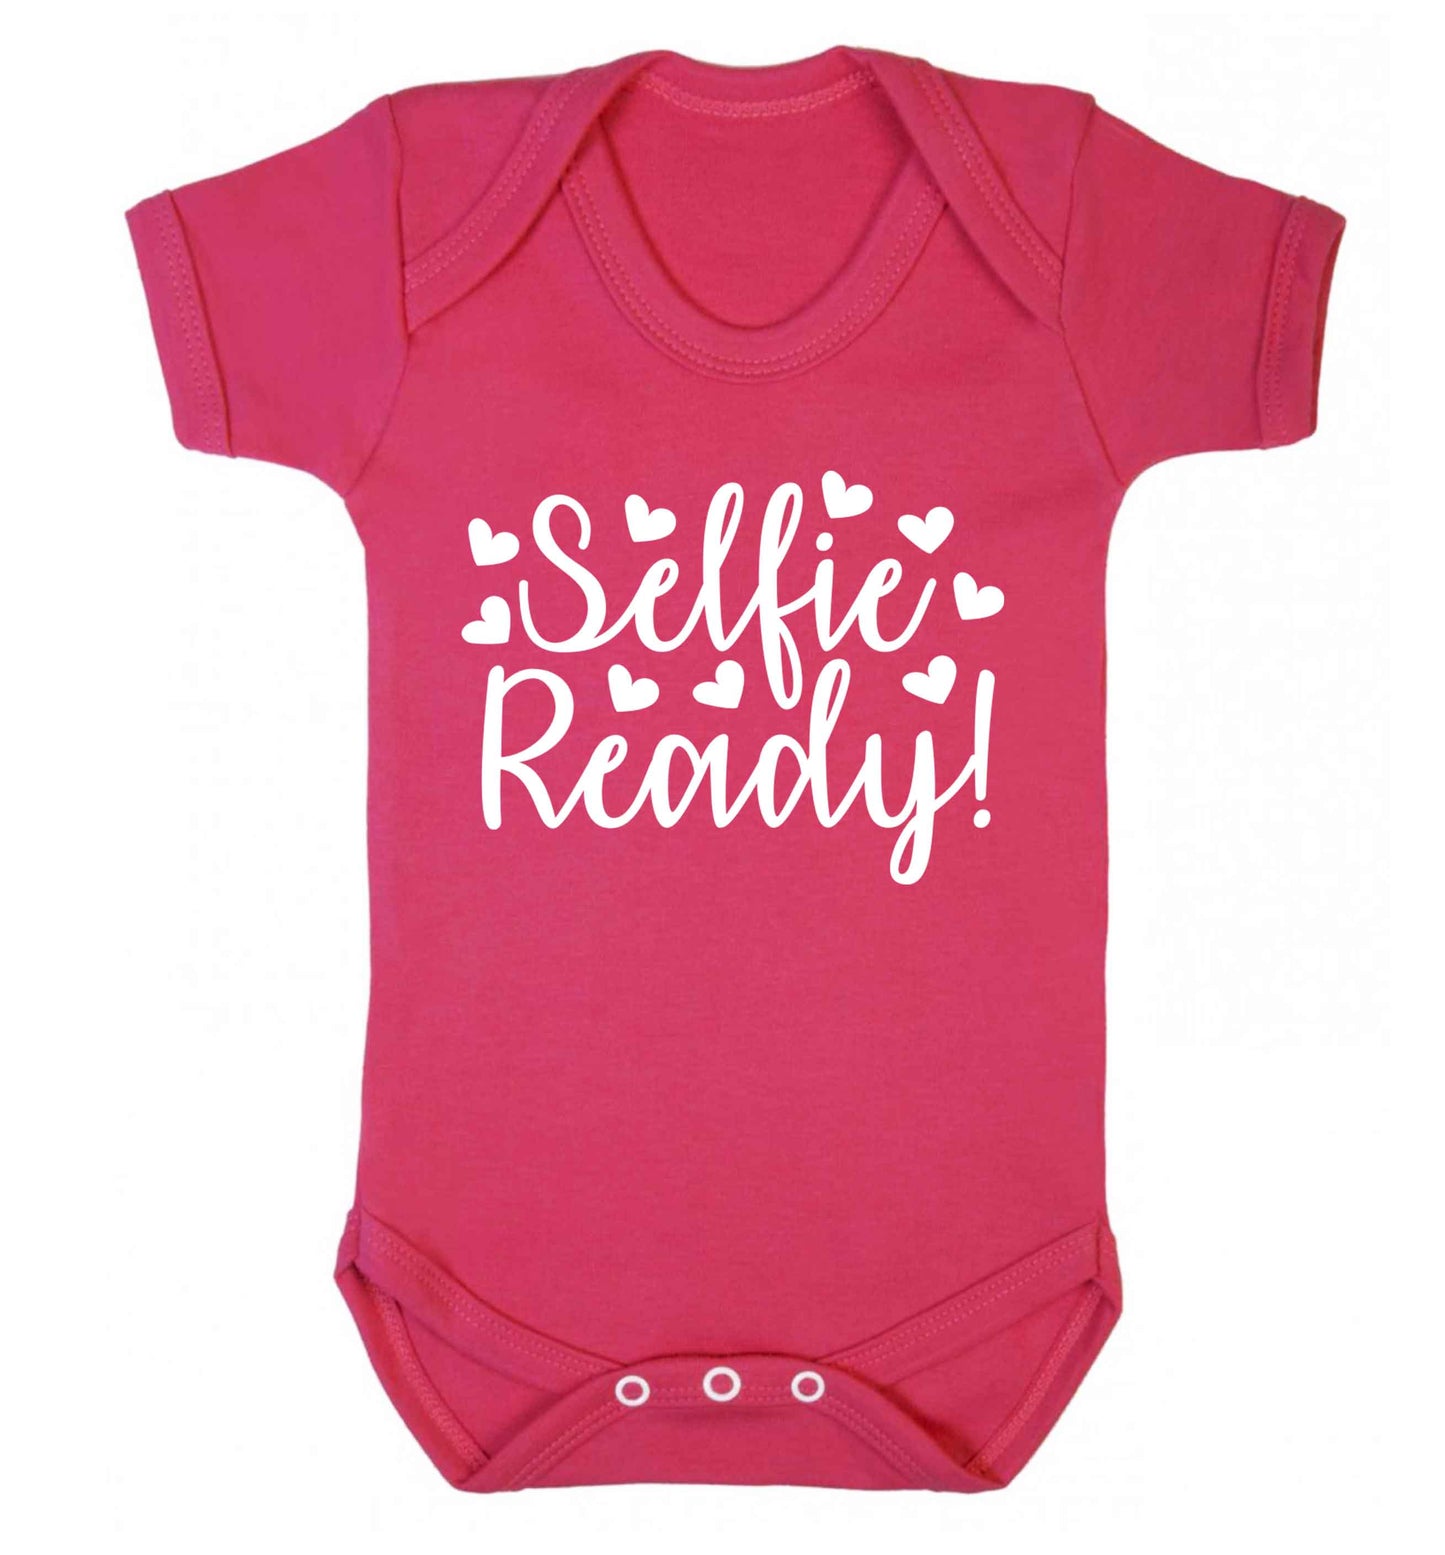 Selfie ready Baby Vest dark pink 18-24 months